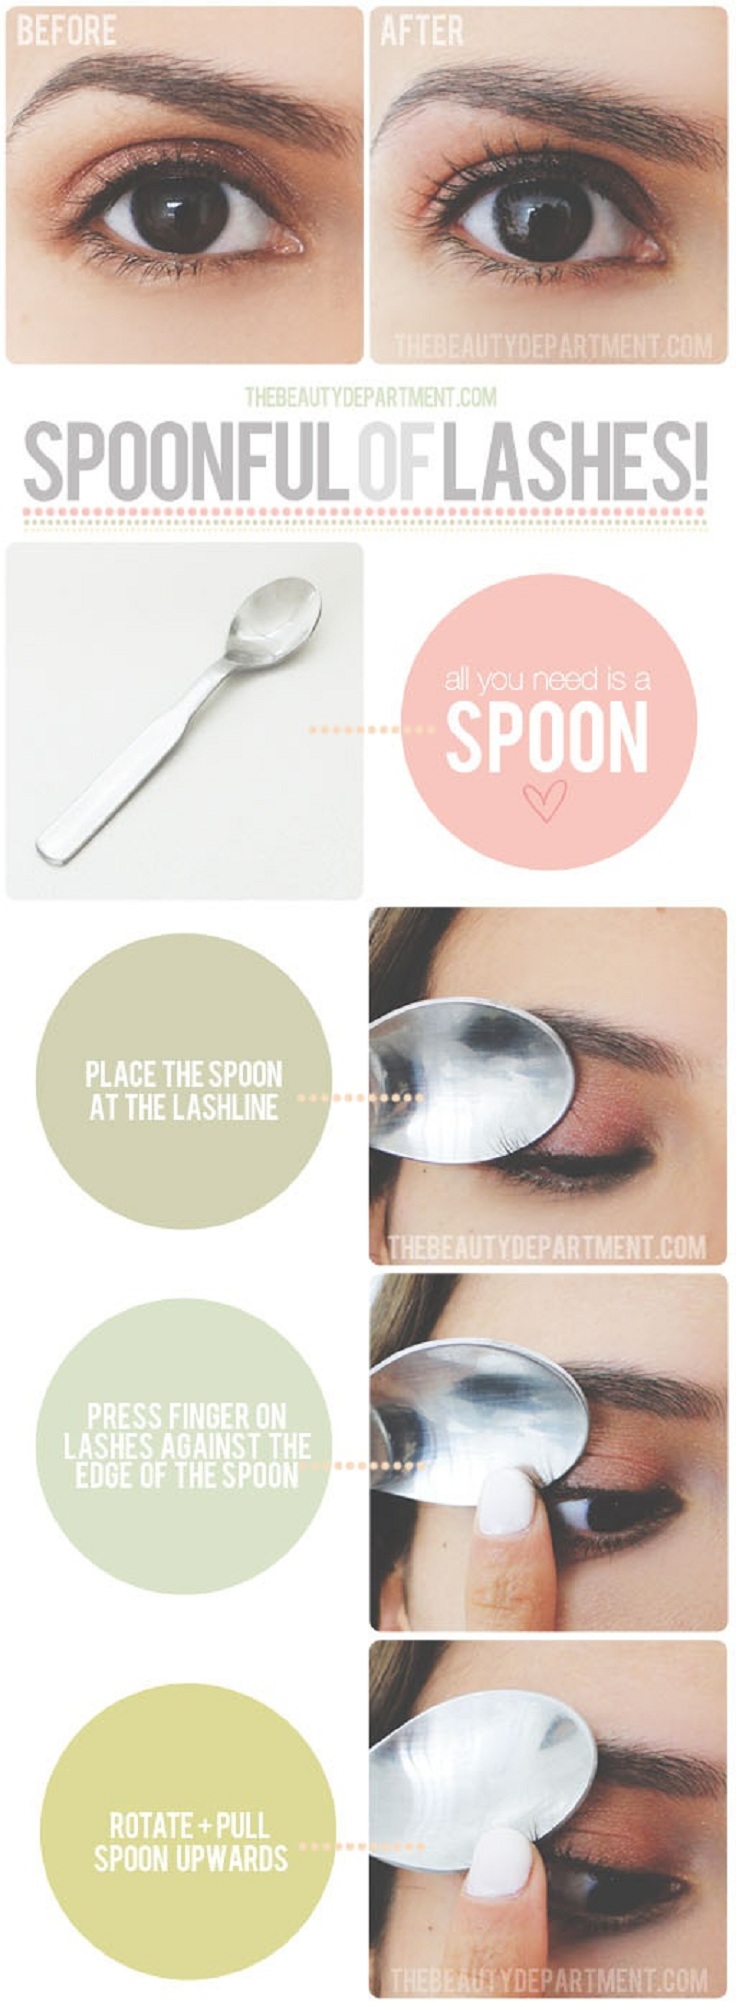 DIY-Lash-Curling-with-a-Spoon